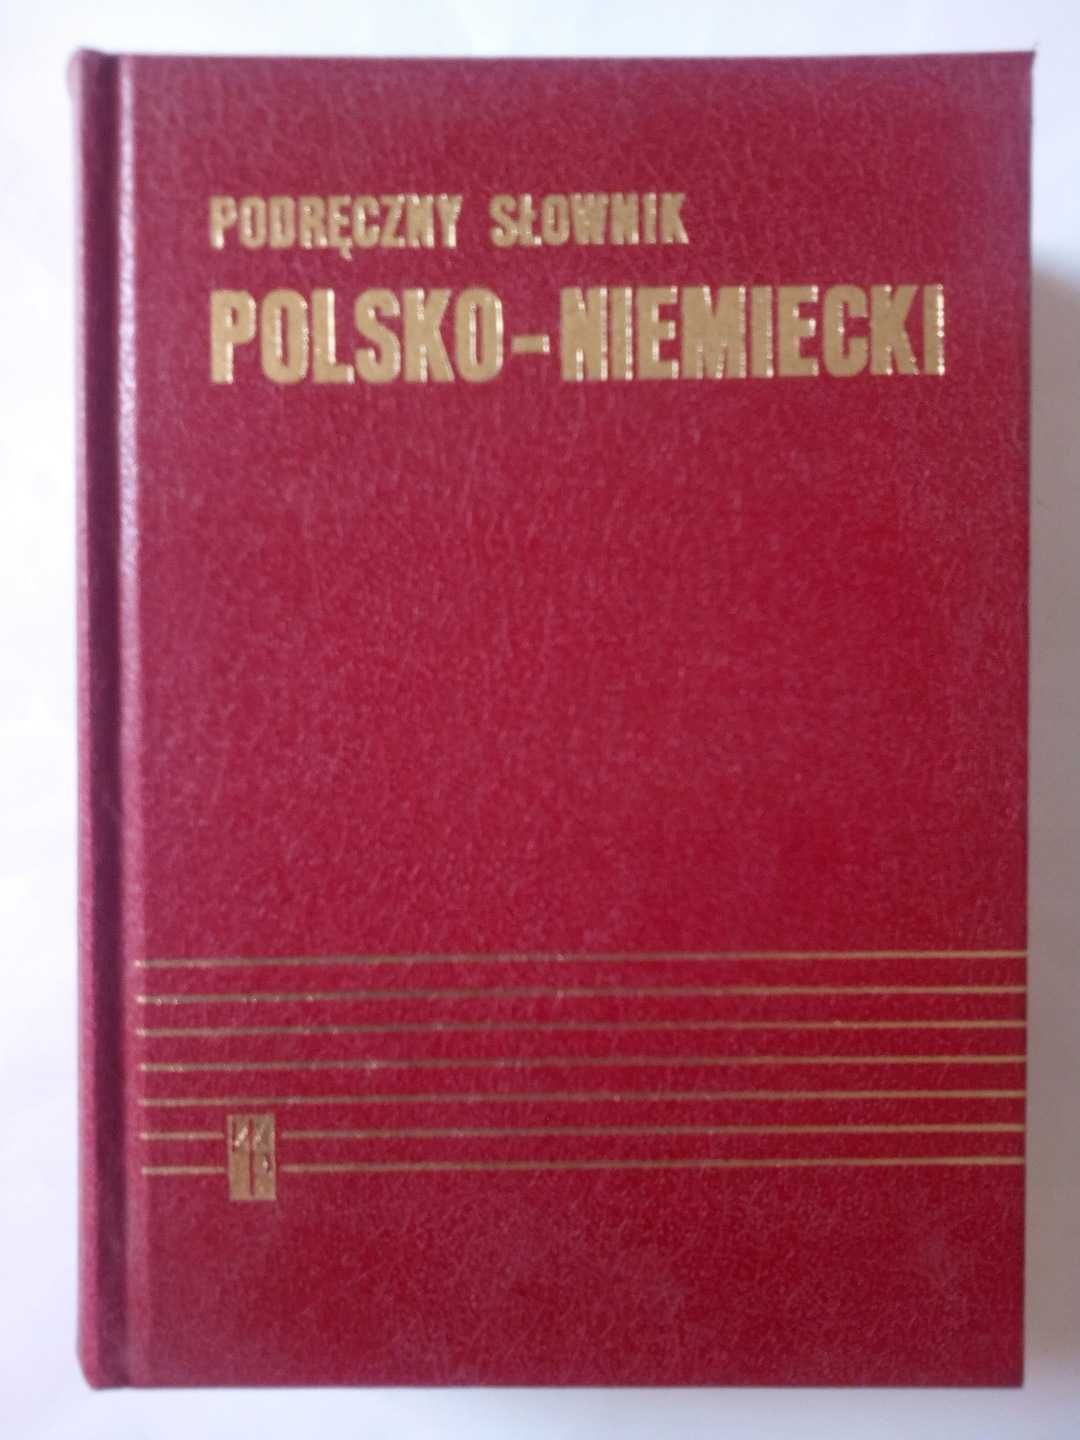 Podręczny słownik polsko-niemiecki Bzdęga